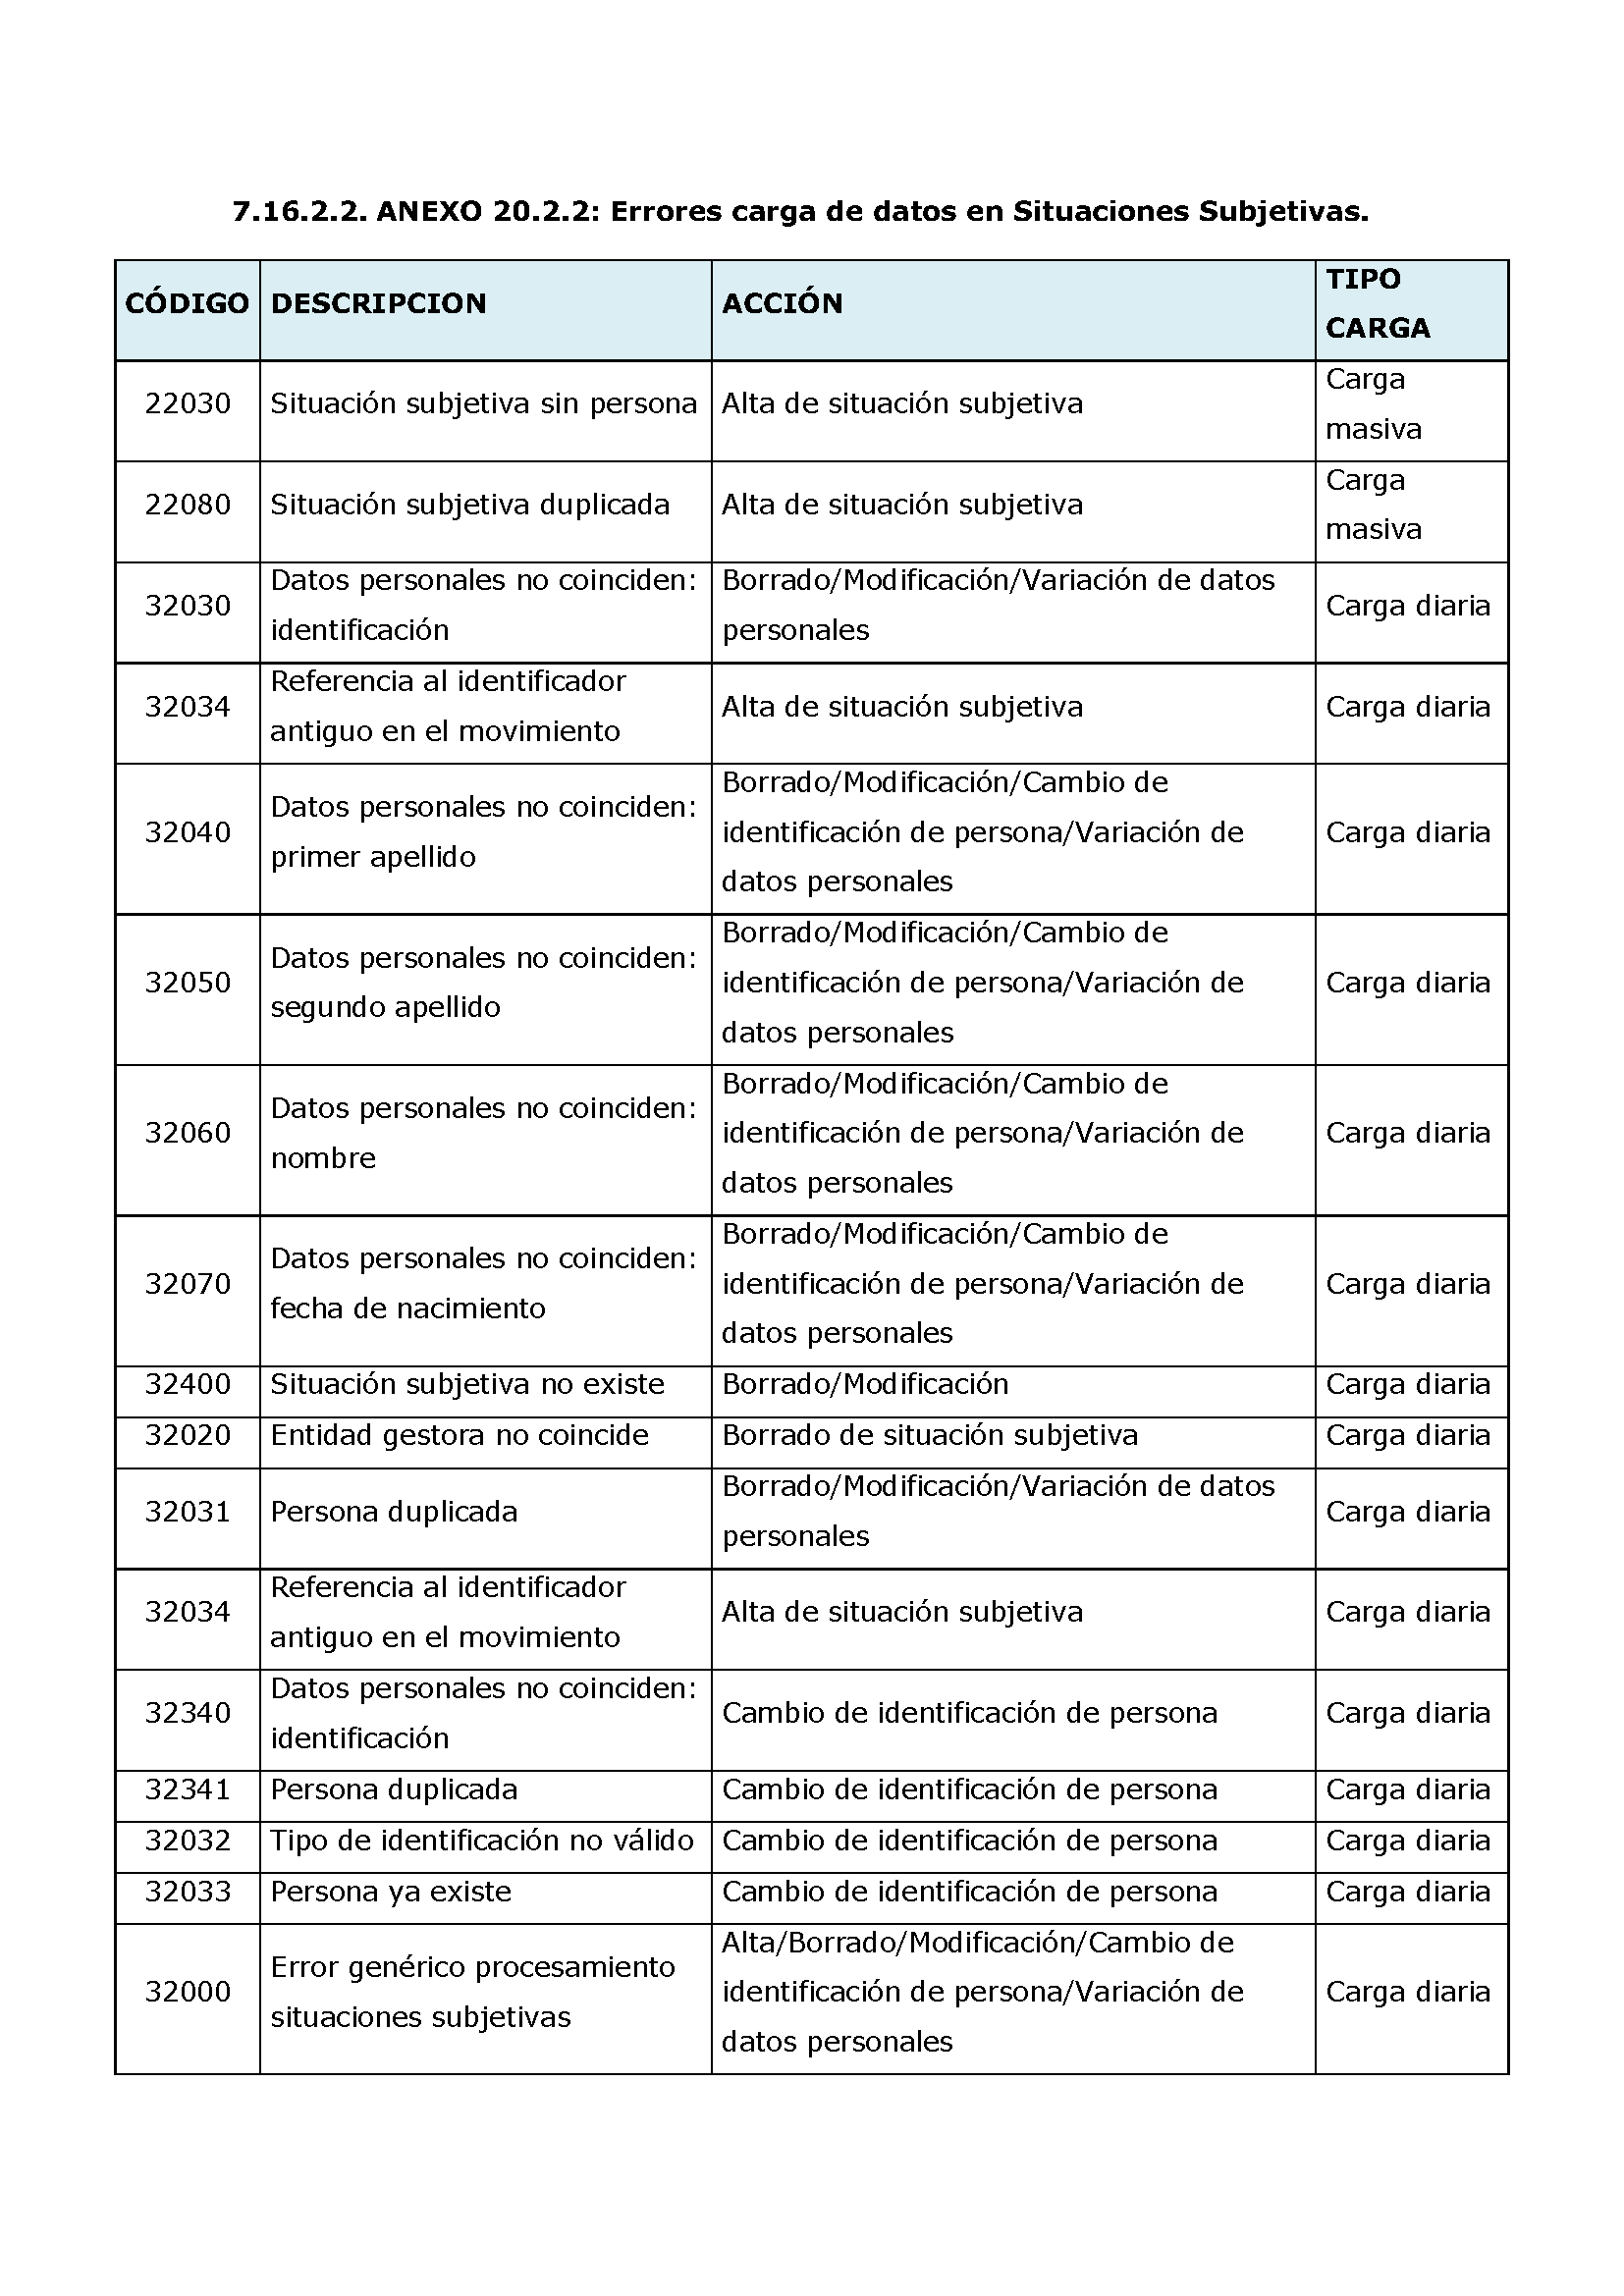 ANEXOS PROTOCOLO DE INTERCAMBIO DE FICHEROS PARA LA CARGA DE DATOS EN TARJETA SOCIAL DIGITAL Pag 104